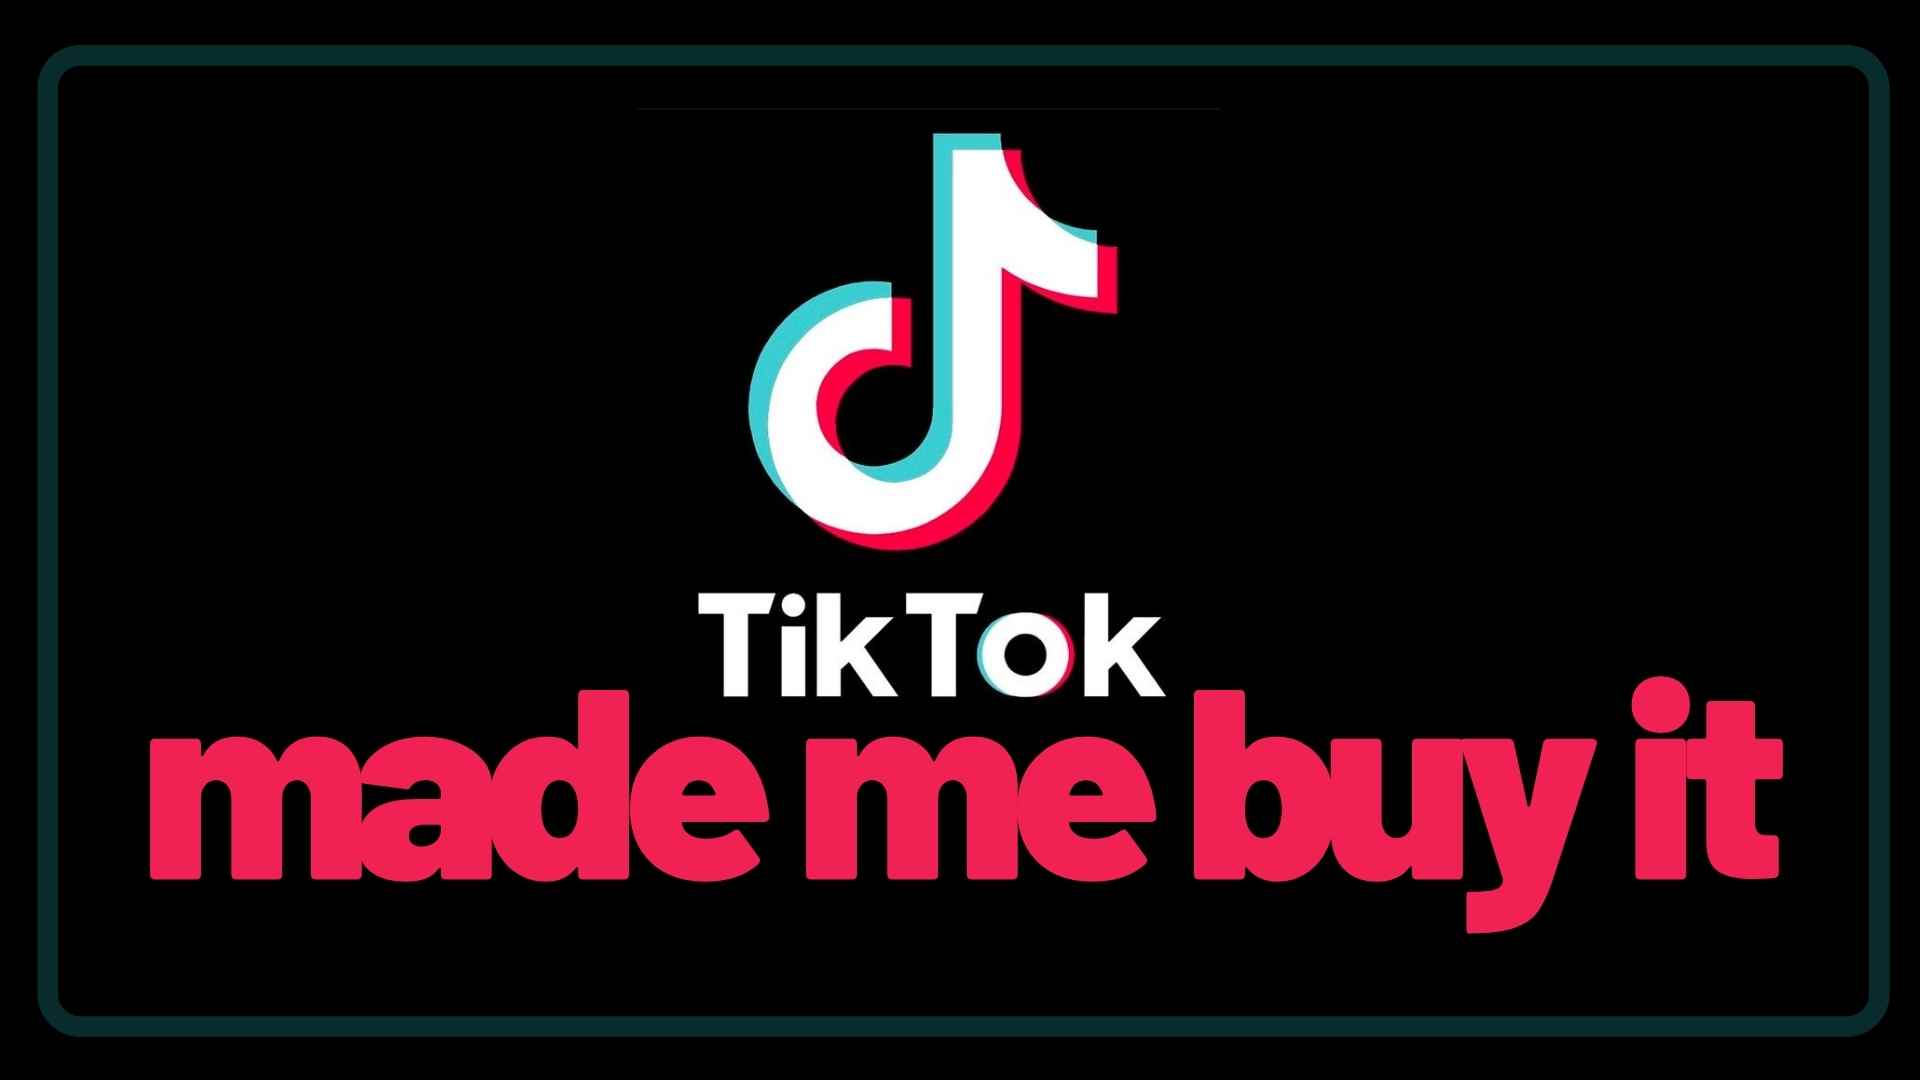 TikTok Make me buy it